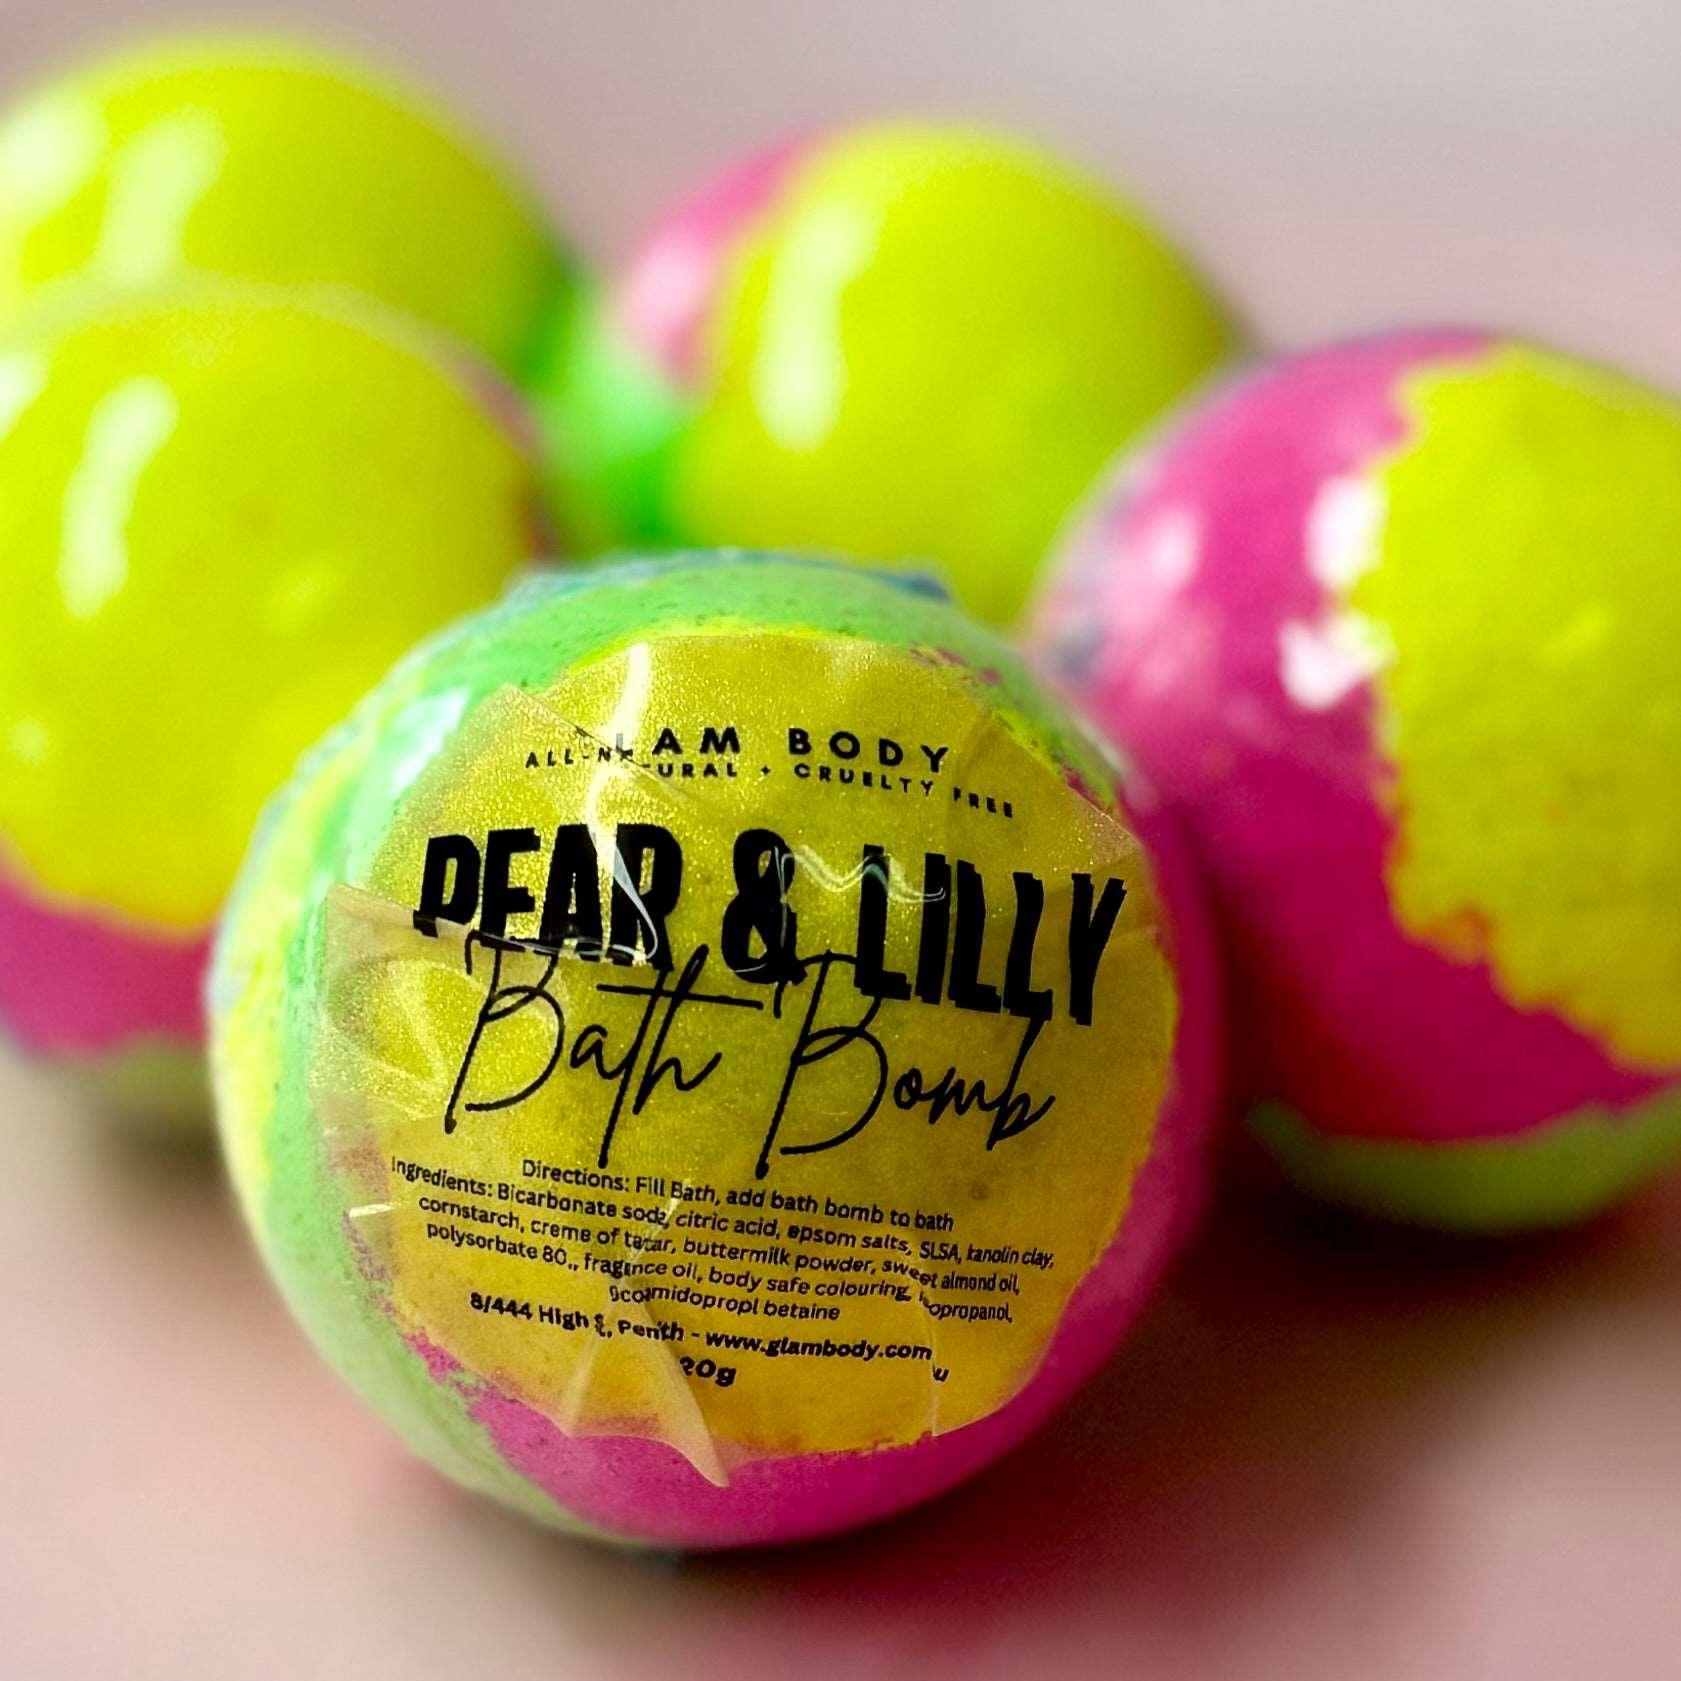 PEAR & LILLY BATH BOMB